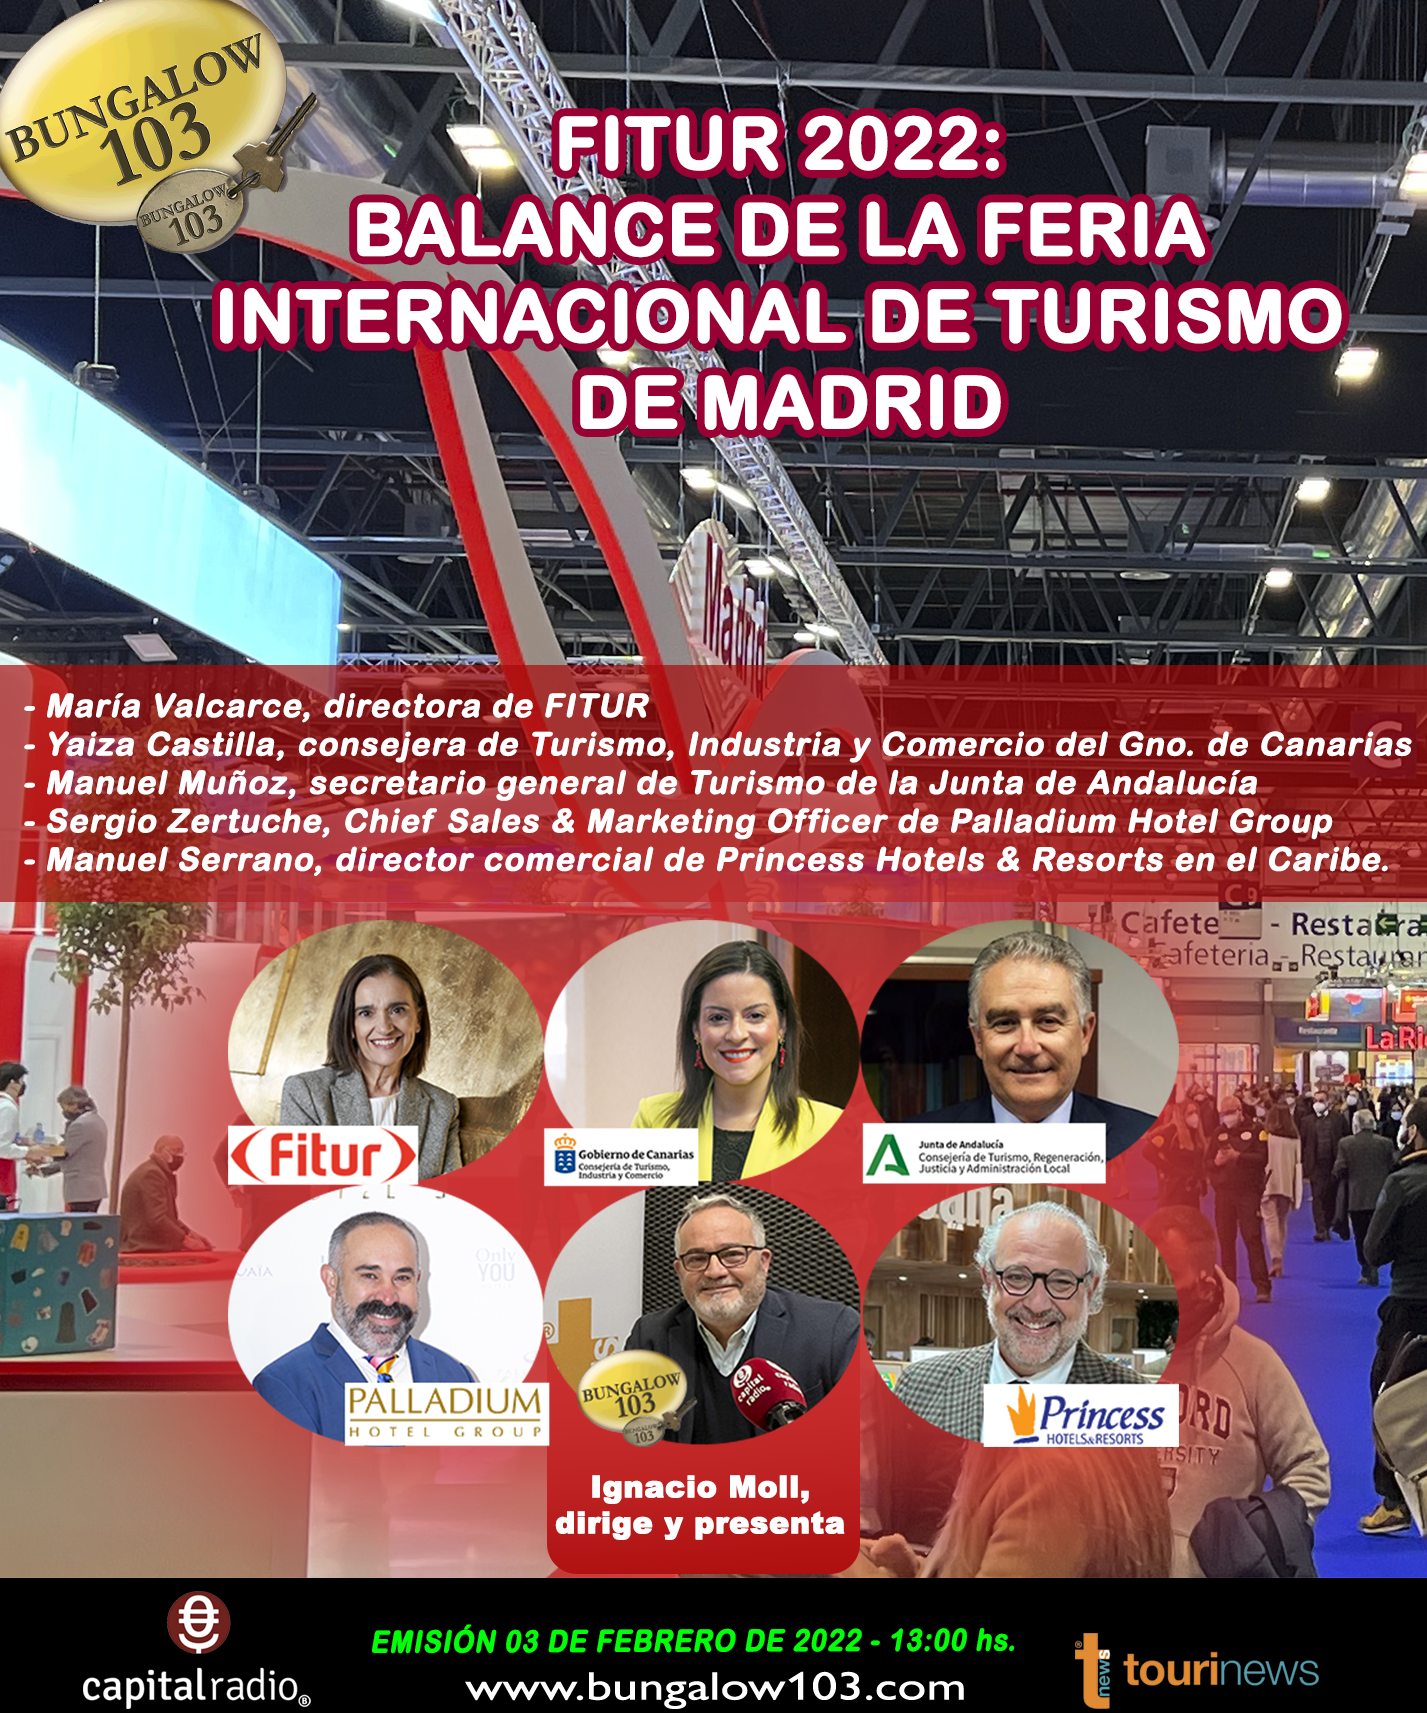 FITUR 2022 Balance de la Feria de Turismo Internacional de Madrid